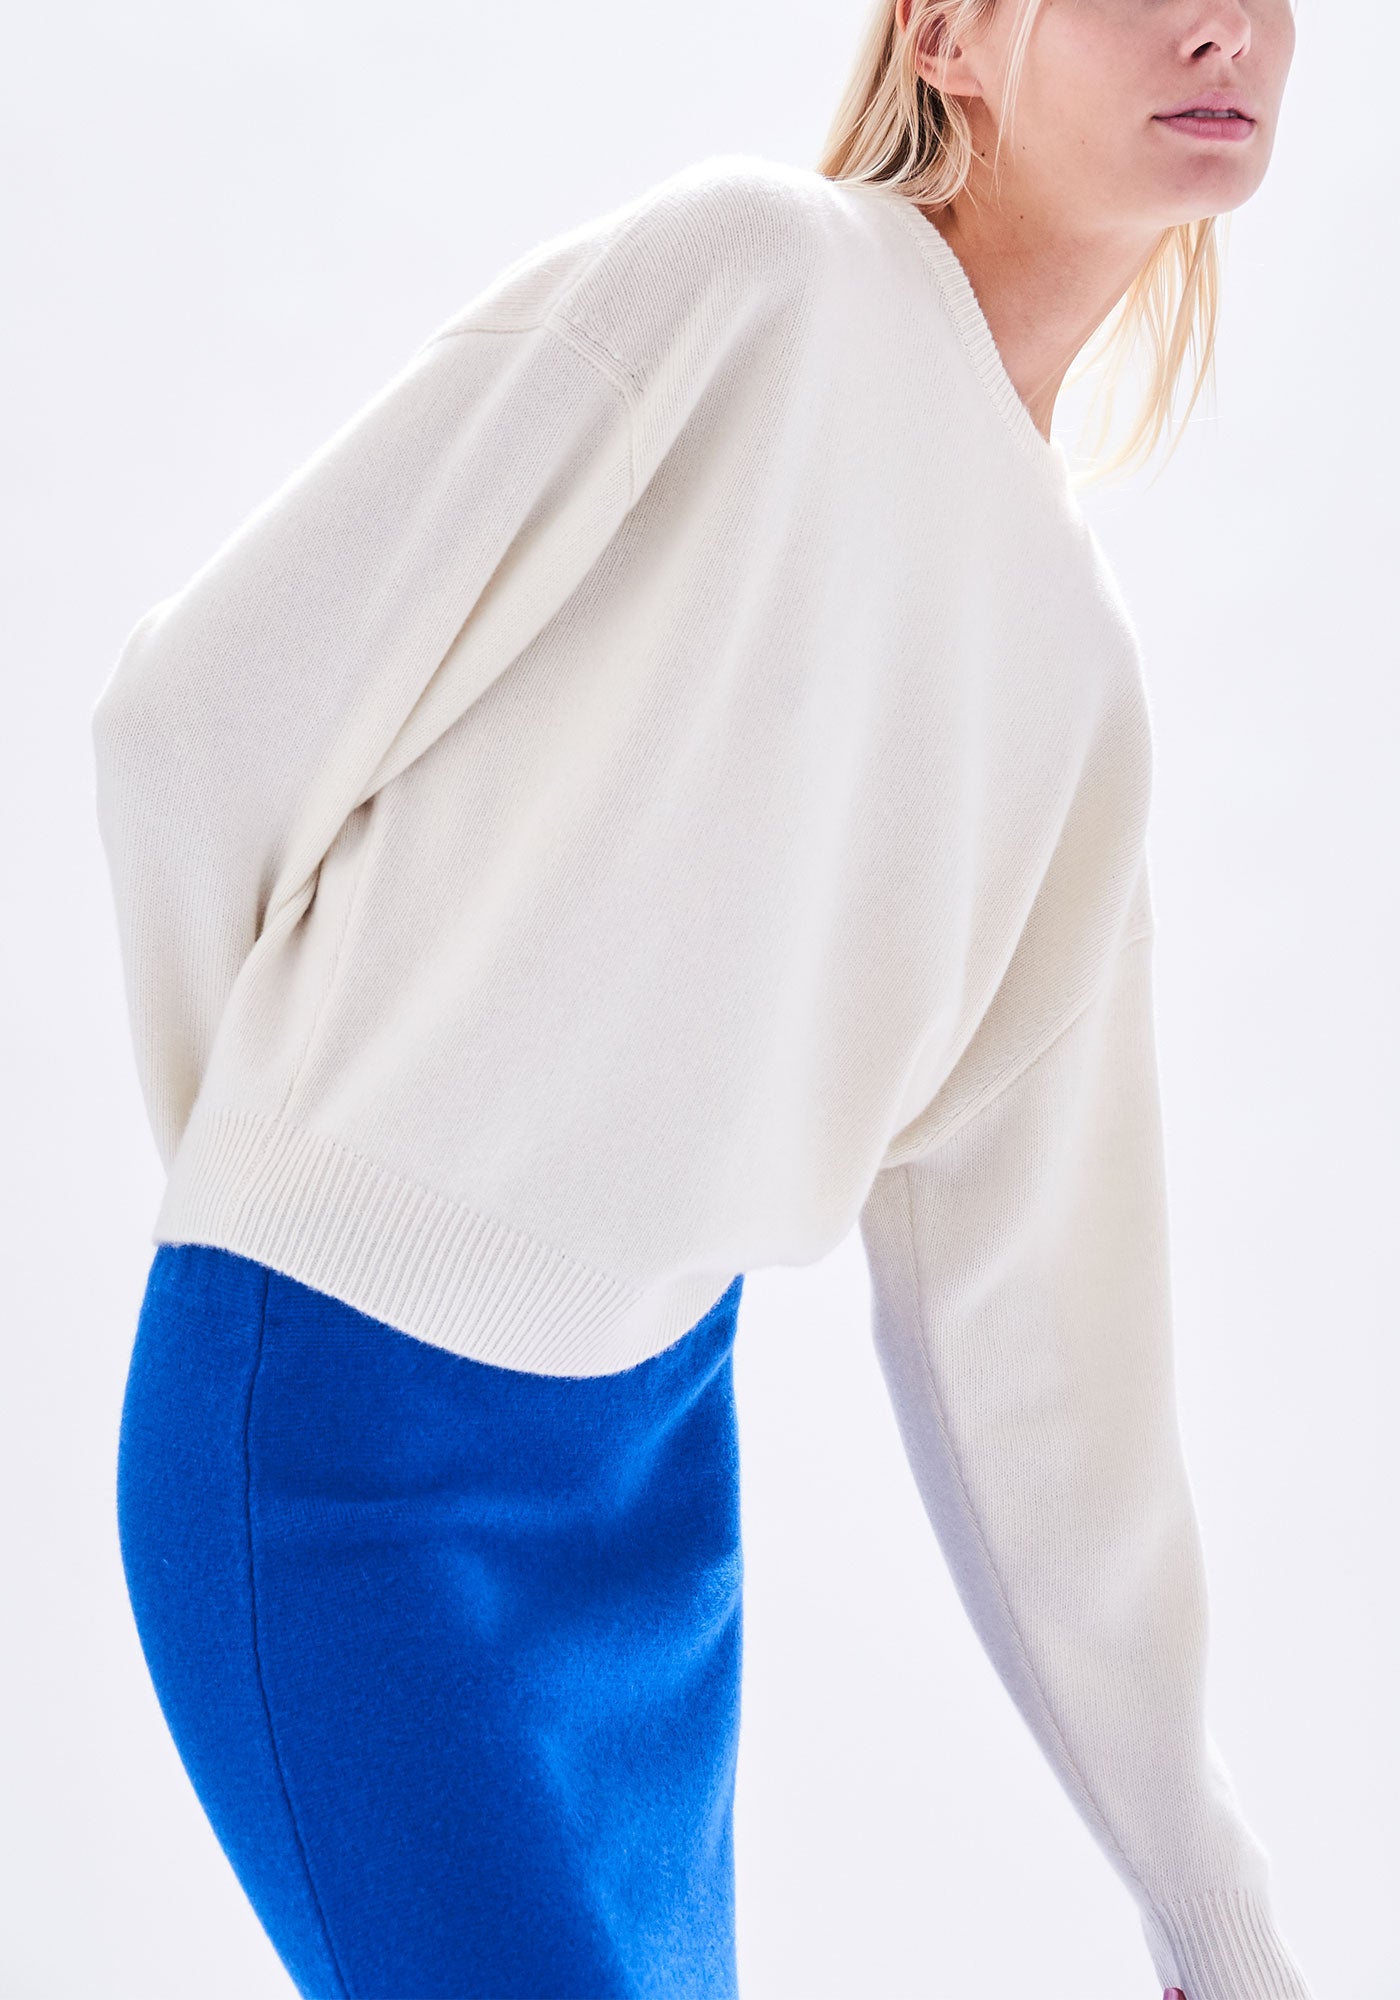 Artemis Sweater